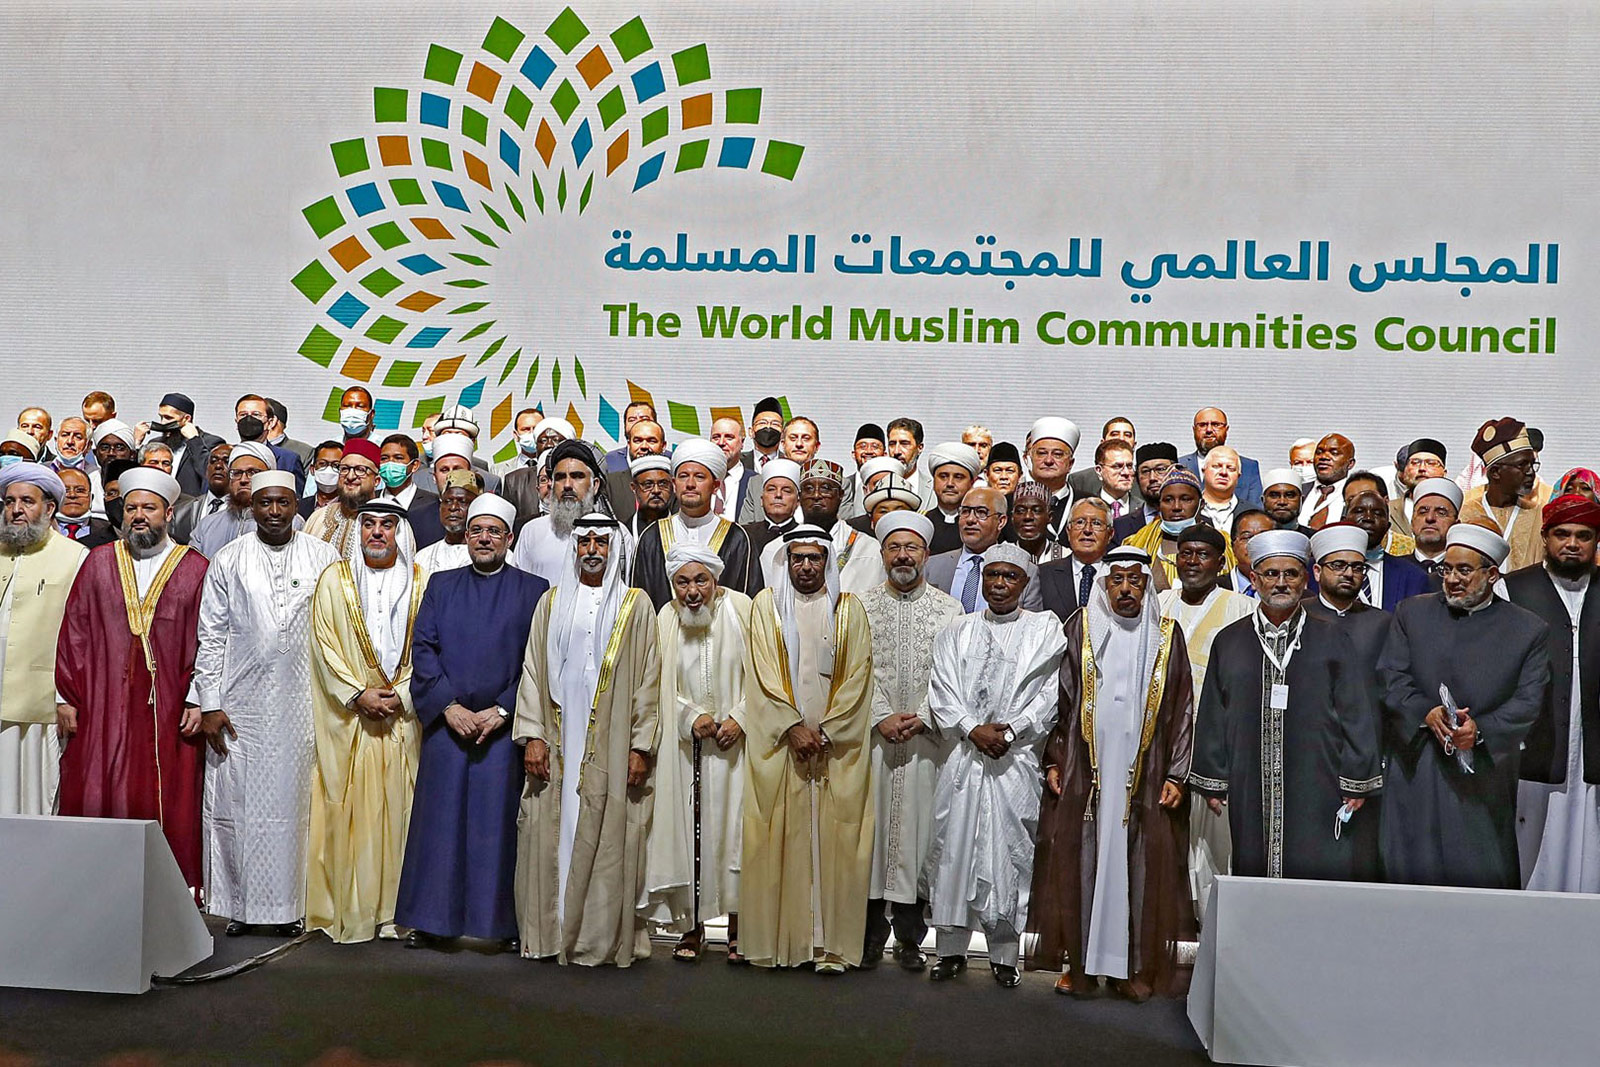 انطلاق فعاليات المؤتمر الدولي للمجلس العالمي للمجتمعات المسلمة